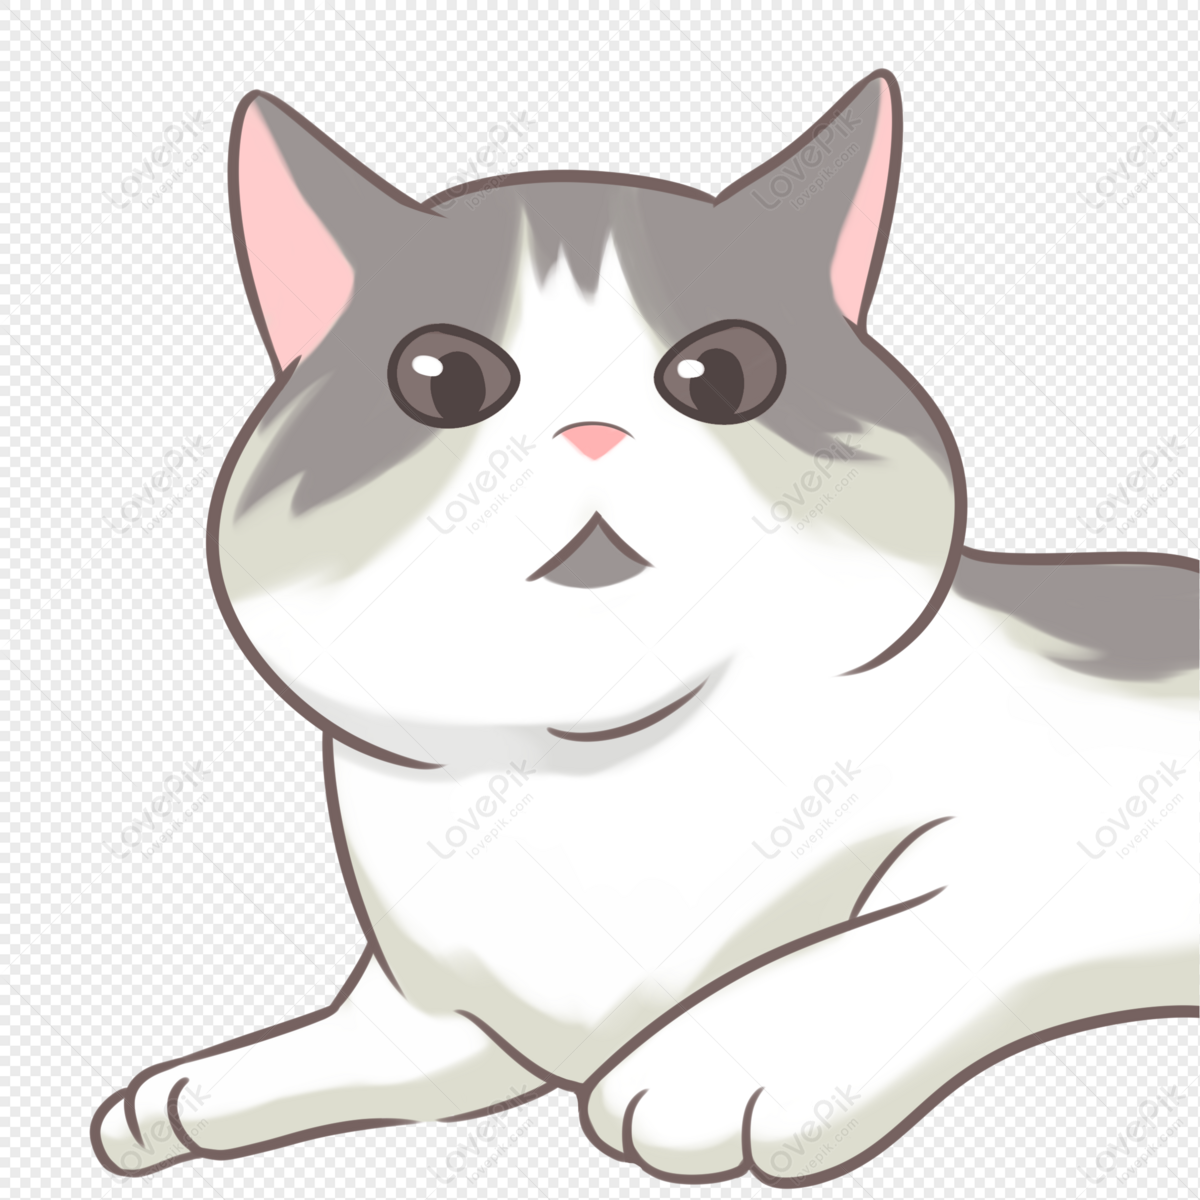 고양이 만화 4 충격을받은 얼굴 PNG 일러스트 무료 다운로드 - Lovepik